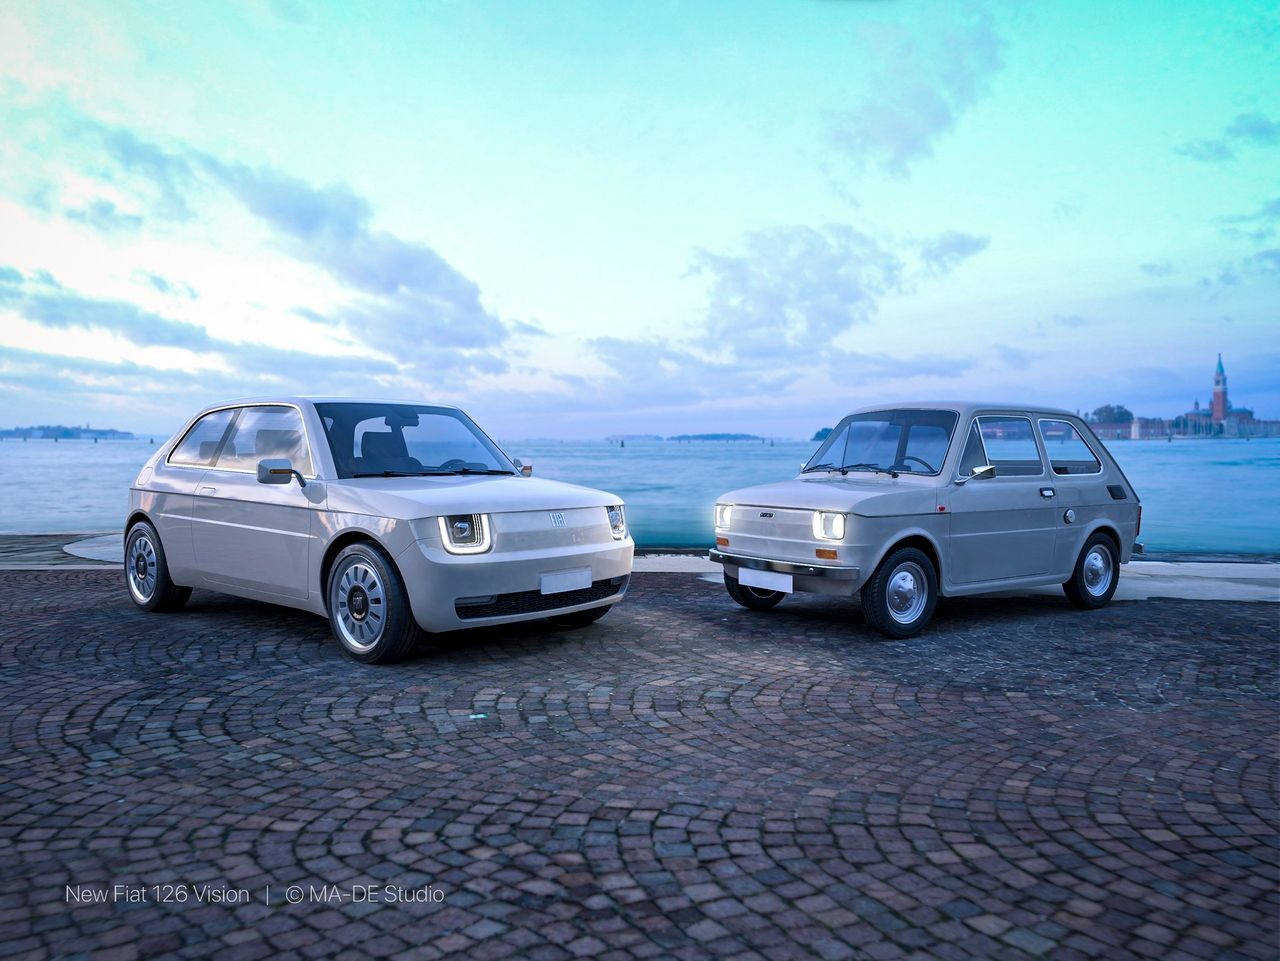 Wizja nowego Fiata 126 wraz z oryginałem (fot. MA-DE studio)